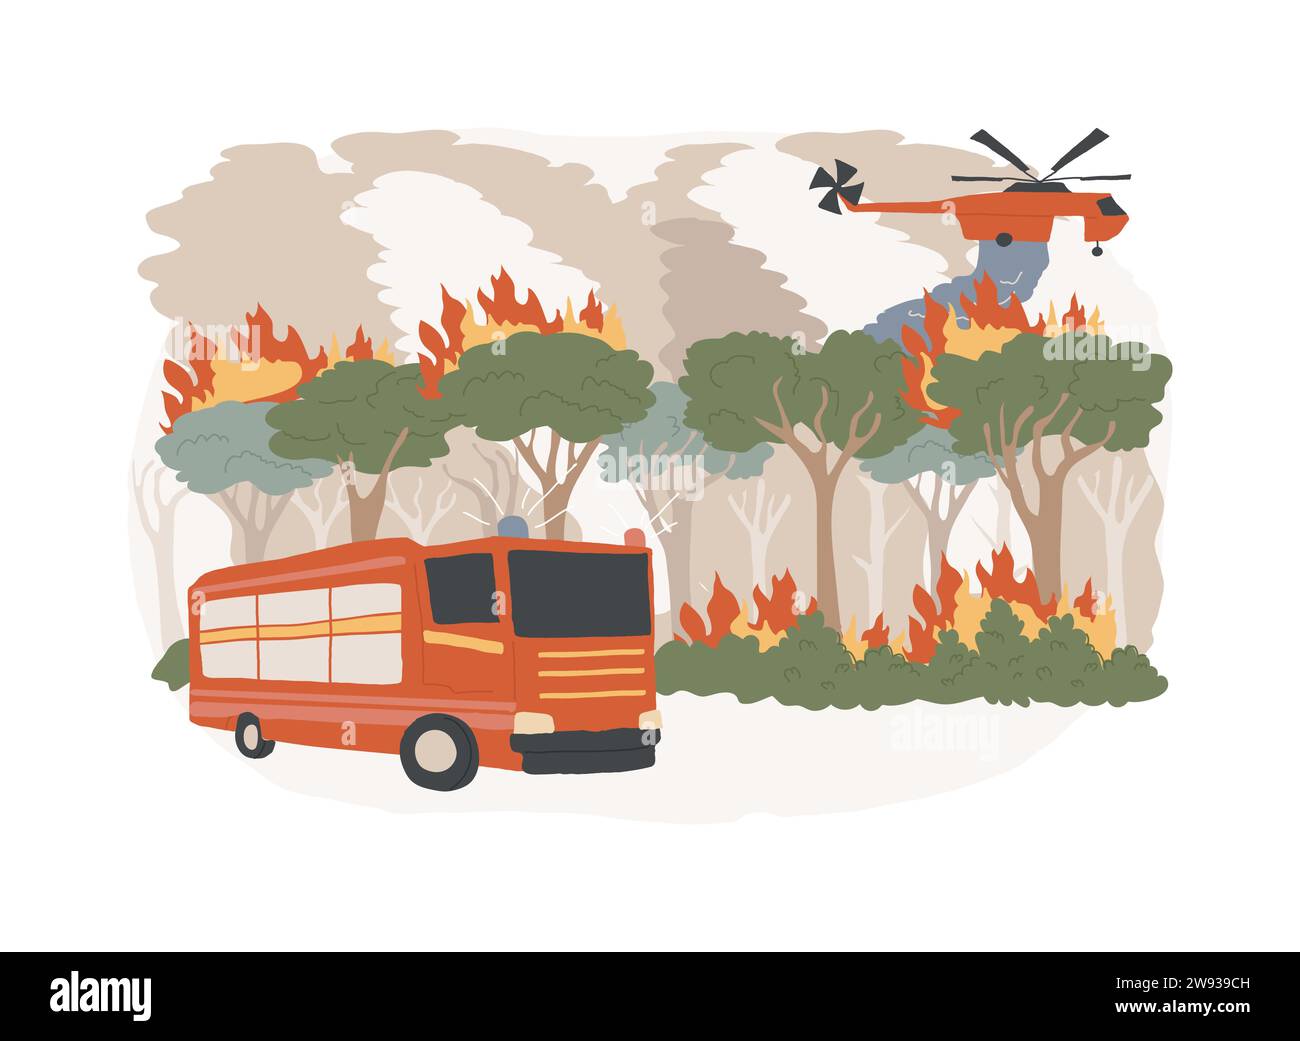 Waldbrände isolierte Konzeptvektorillustration. Waldbrände, Brandbekämpfung, Waldbrände, Verlust von Wildtieren, globale Erwärmung, Naturkatastrophe, Vektorkonzept für heiße Temperaturen. Stock Vektor